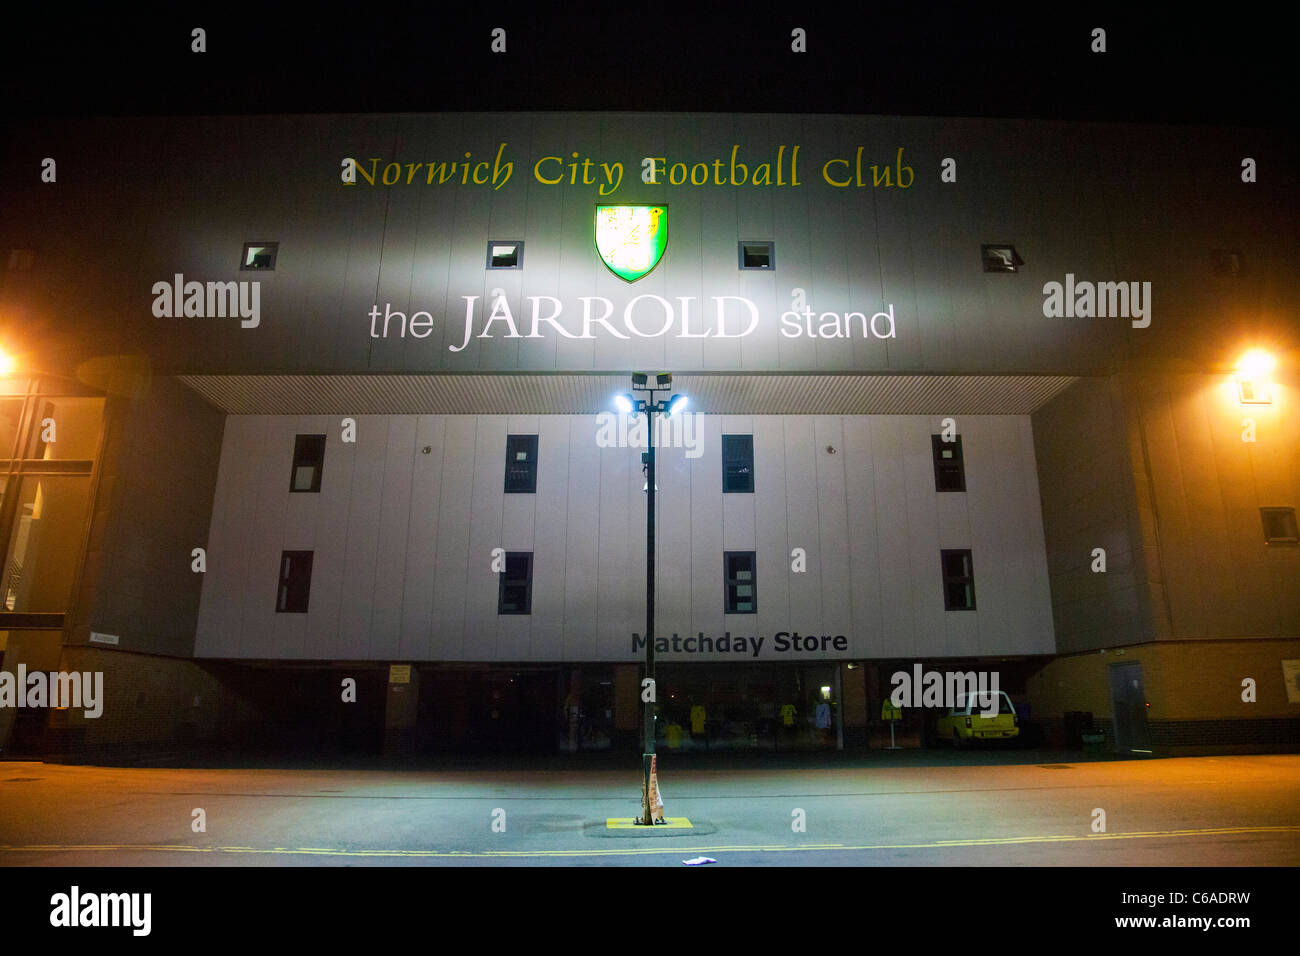 Norwich City Football Club at night, Norwich, UK Stock Photo